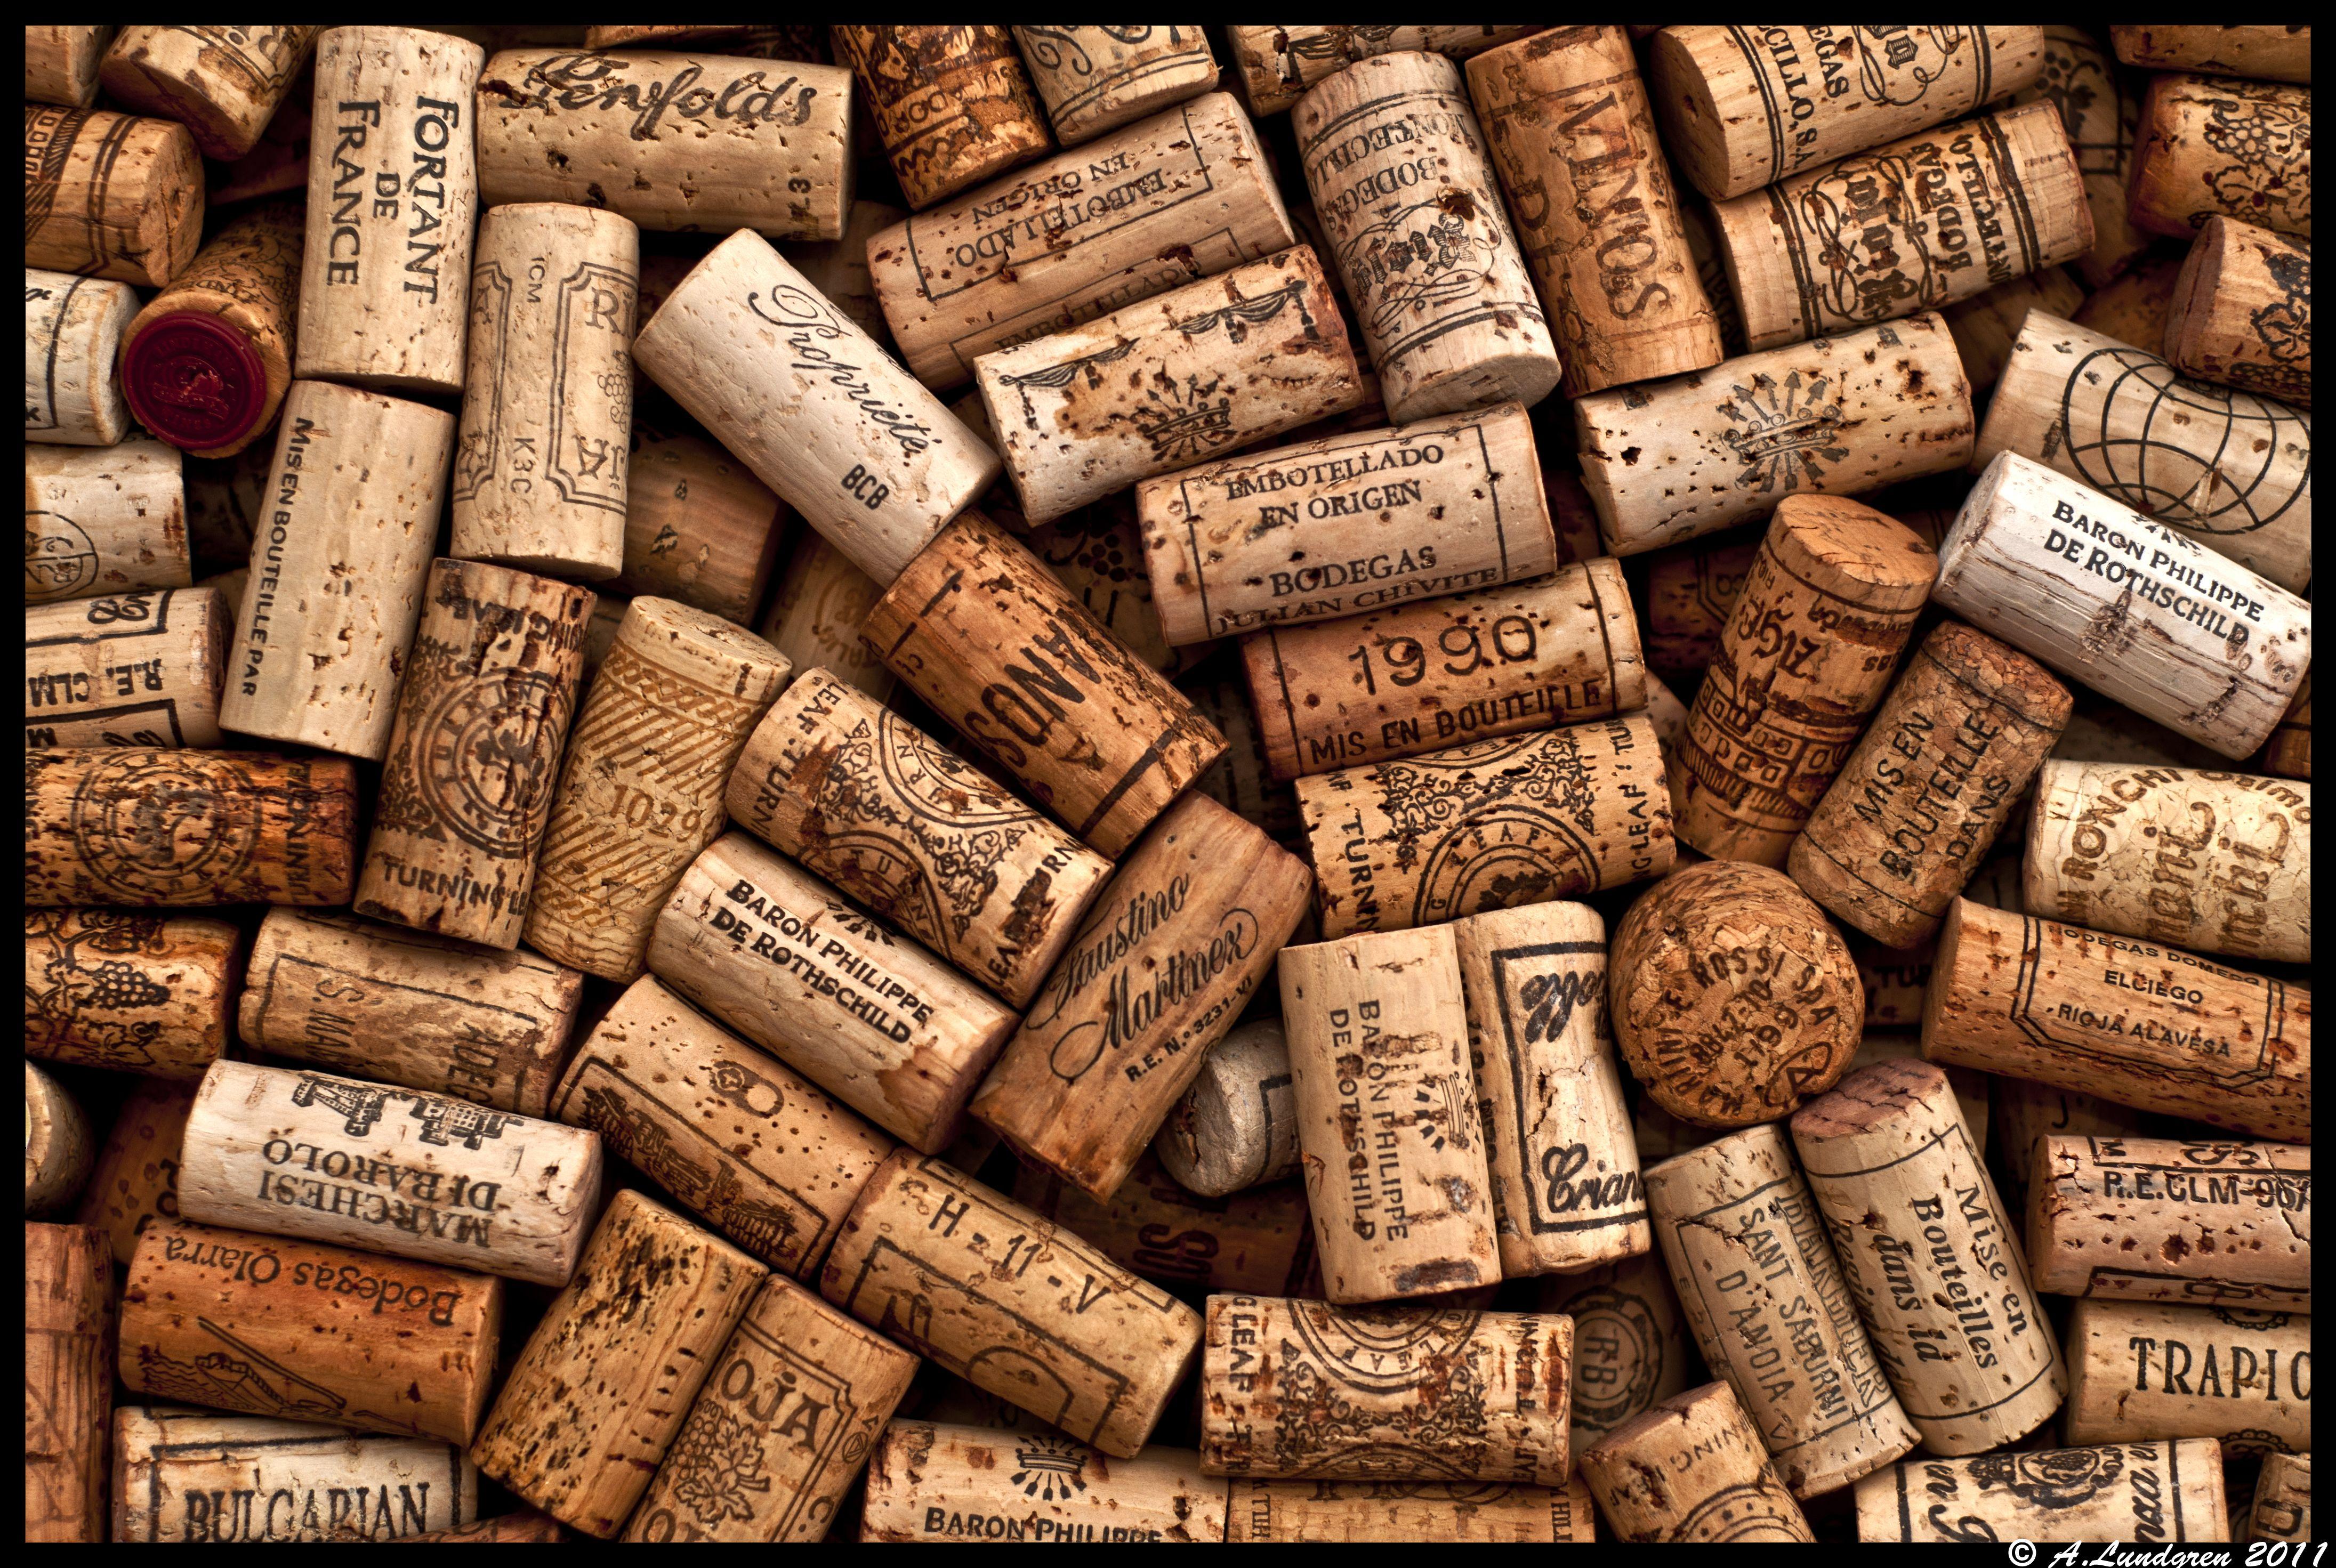 wine cork background